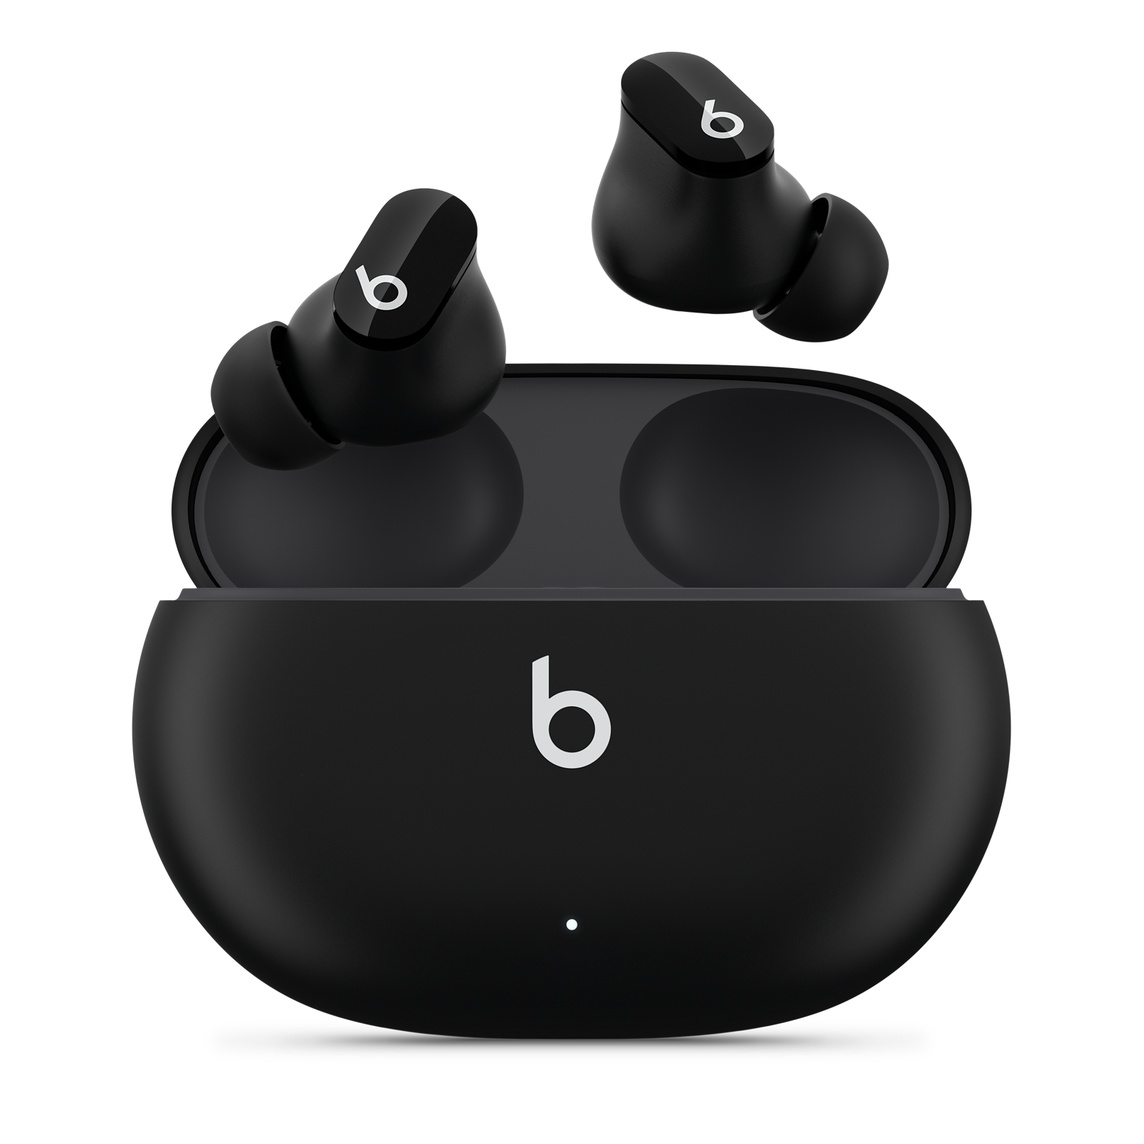 Douszne słuchawki bezprzewodowe z redukcją hałasu Beats Studio Buds w kolorze czarnym z widocznym logo Beats i wygodnym etui ładującym.